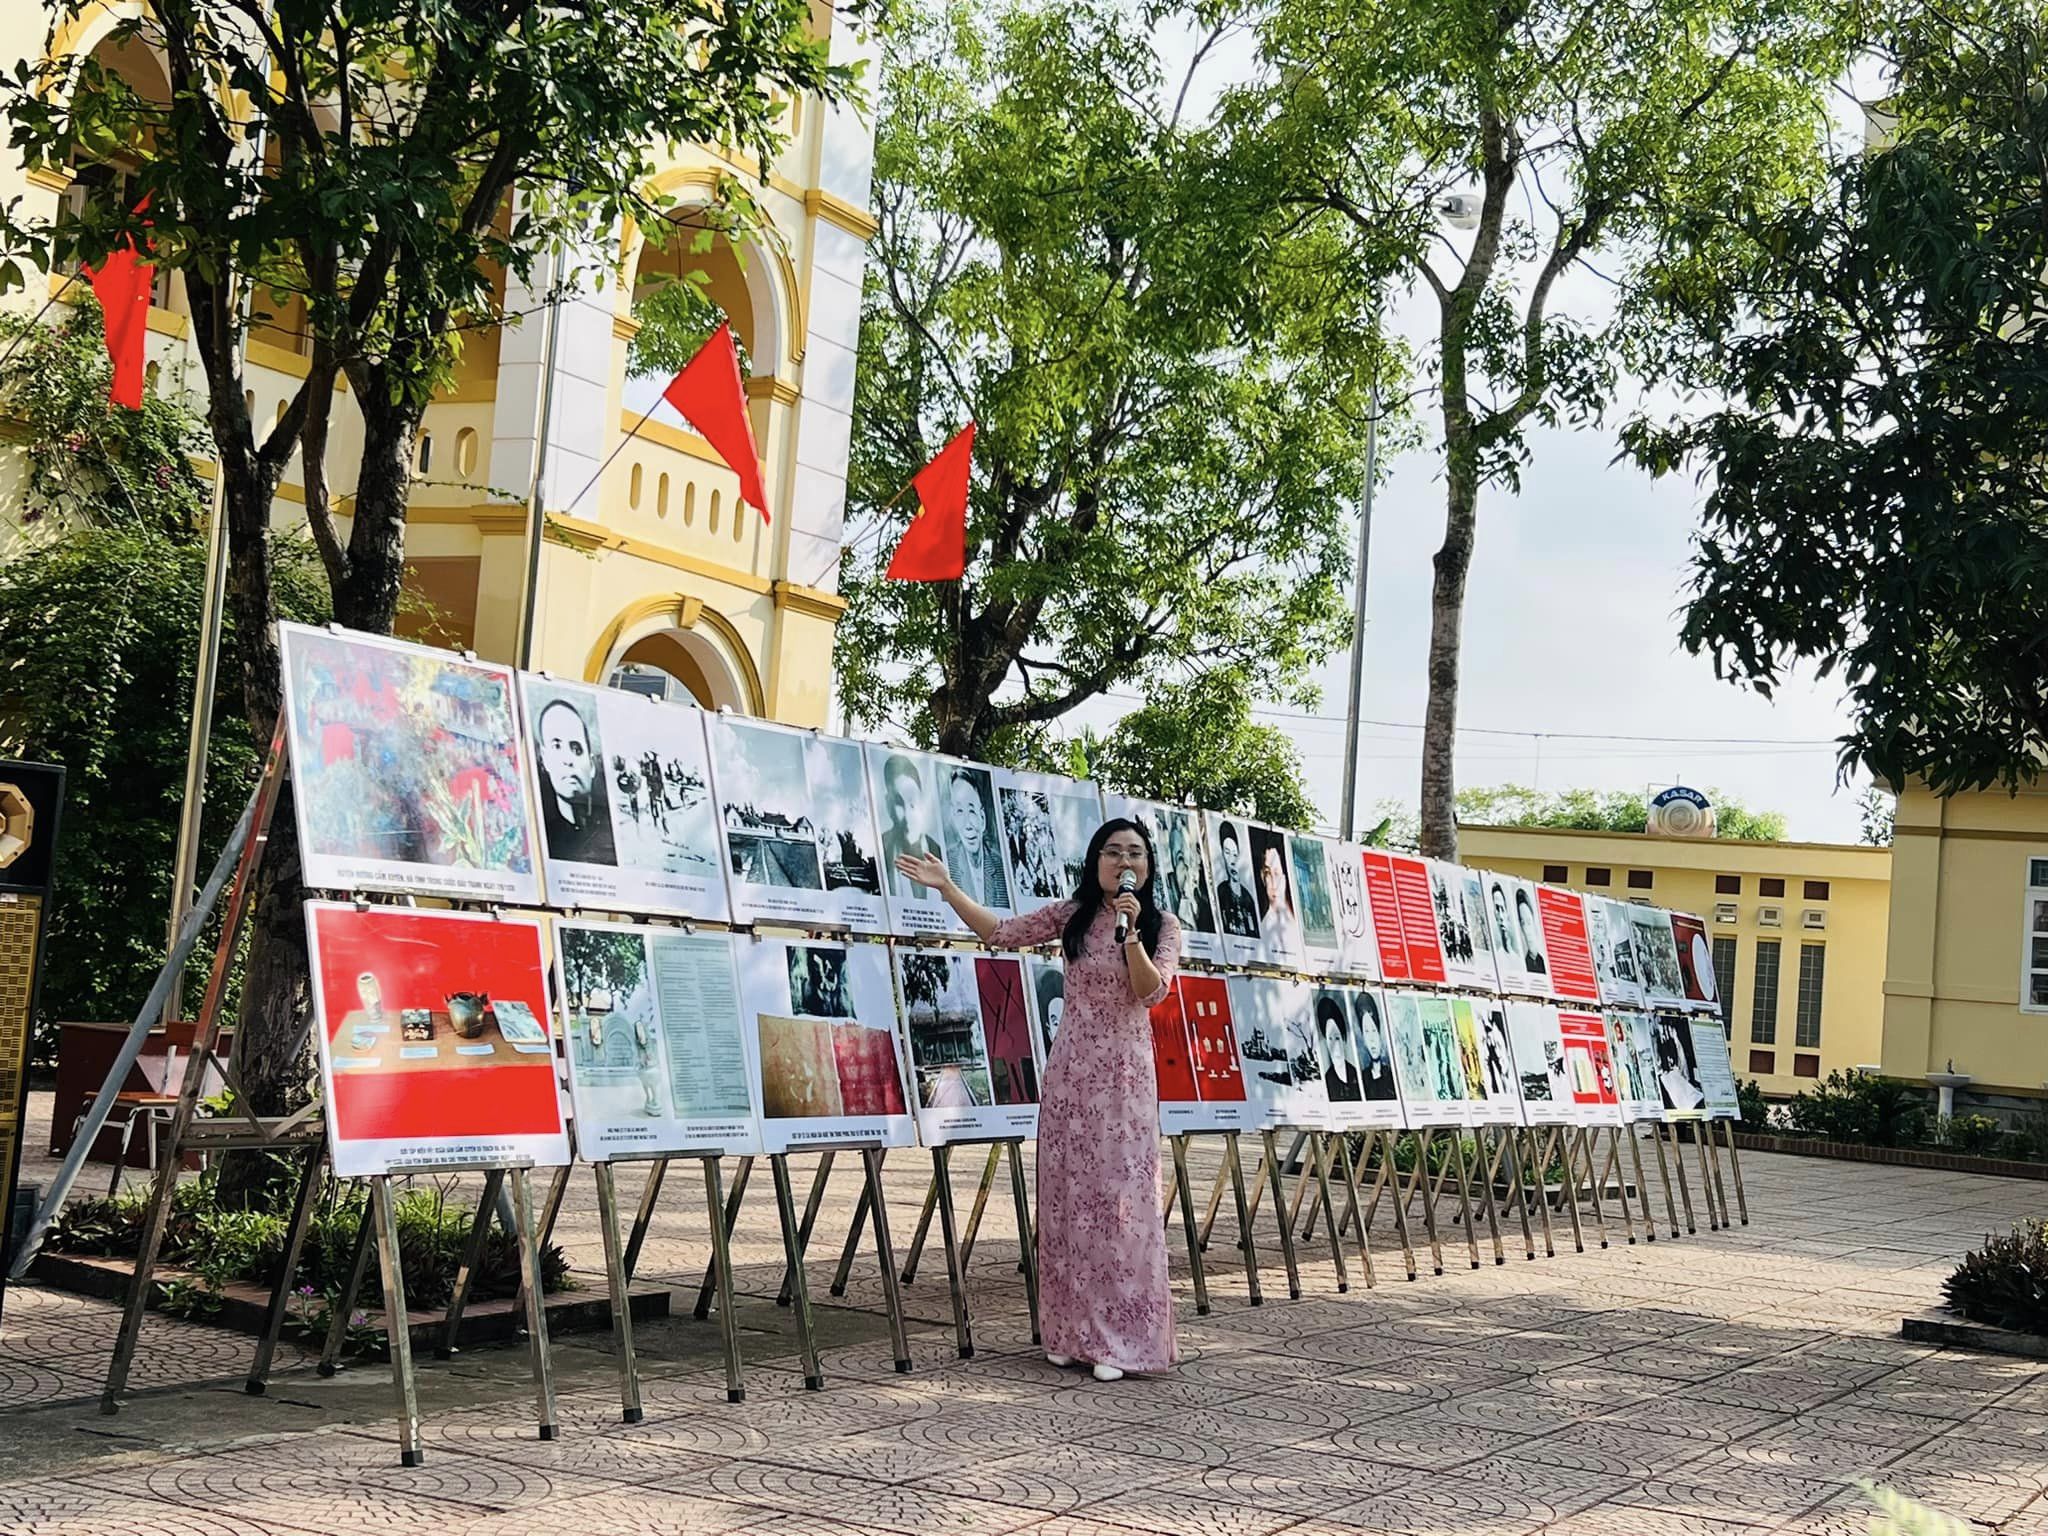 Bảo tàng Xô viết Nghệ Tĩnh tổ chức các hoạt động ý nghĩa nhằm lan tỏa tấm gương đạo đức của Chủ tịch Hồ Chí Minh trên quê hương Nghệ An, Hà Tĩnh